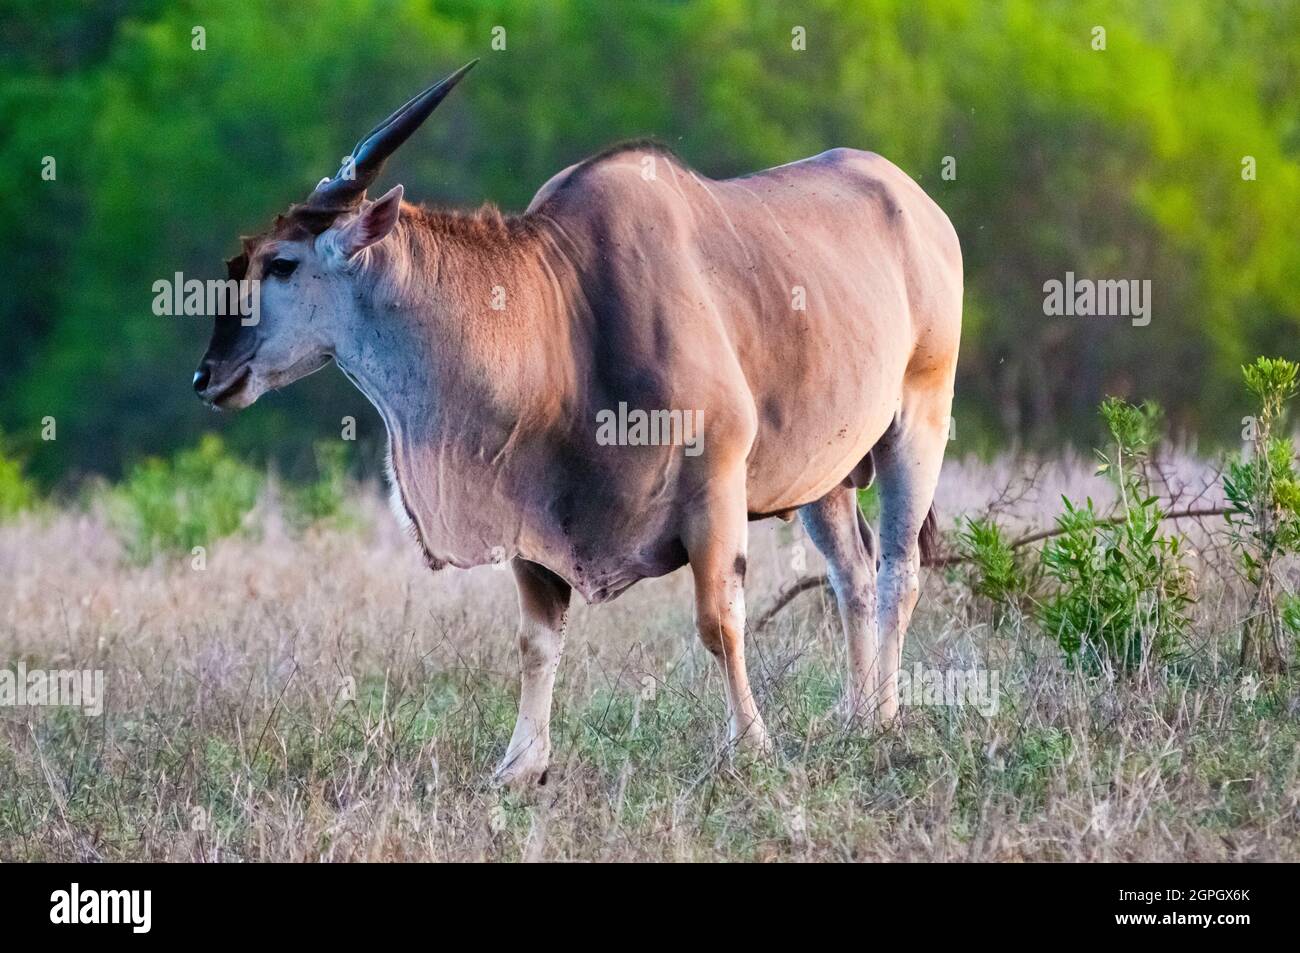 Kenya, parc national de Tsavo East, Malé de terres communes (Taurotragus oryx) Banque D'Images